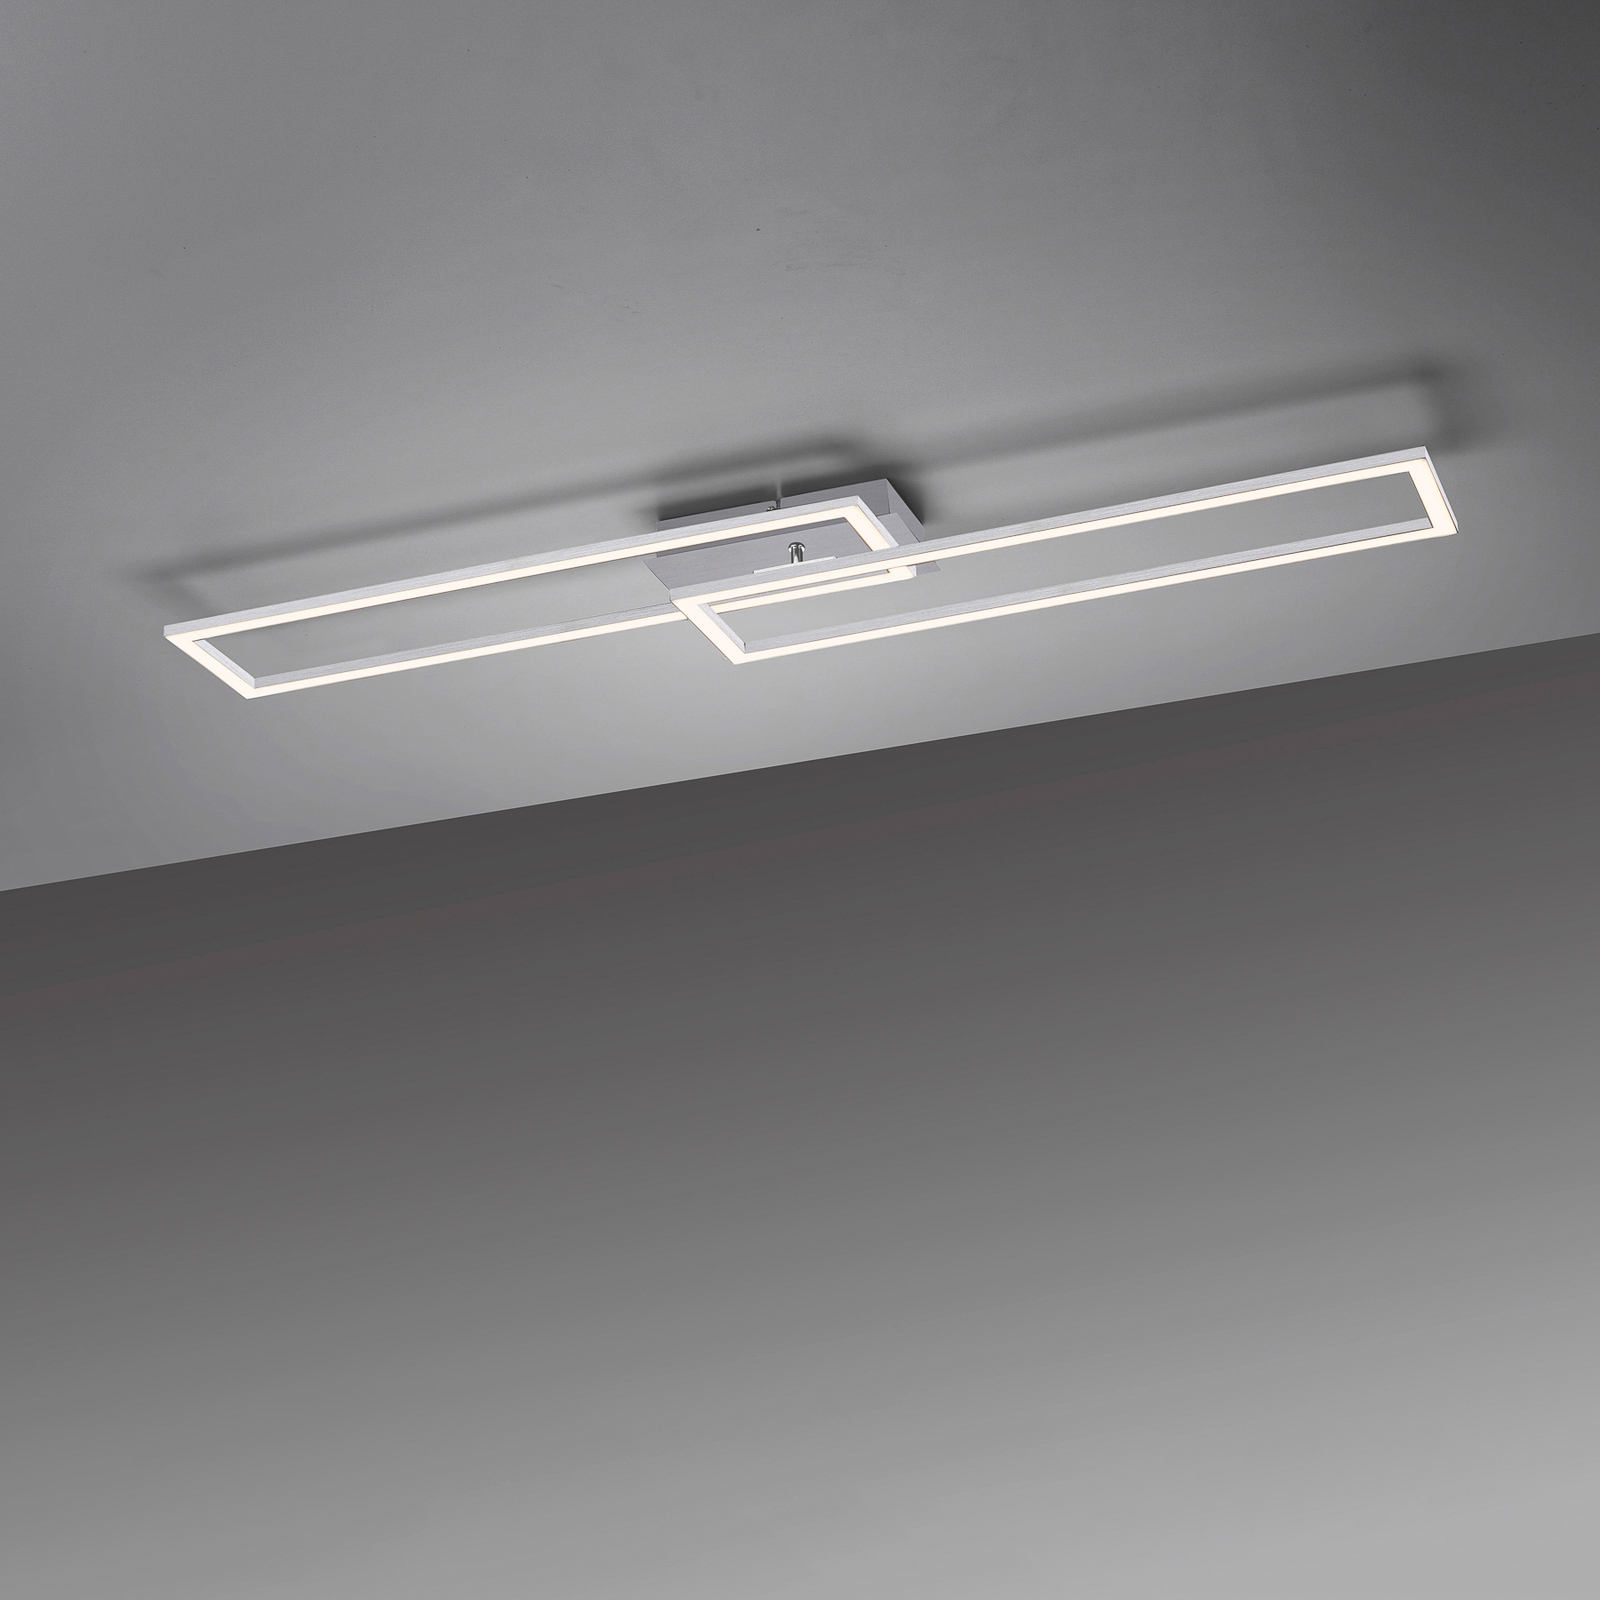 LED lubinis šviestuvas "Iven", plienas, tamsus, 101,6x19,8 cm